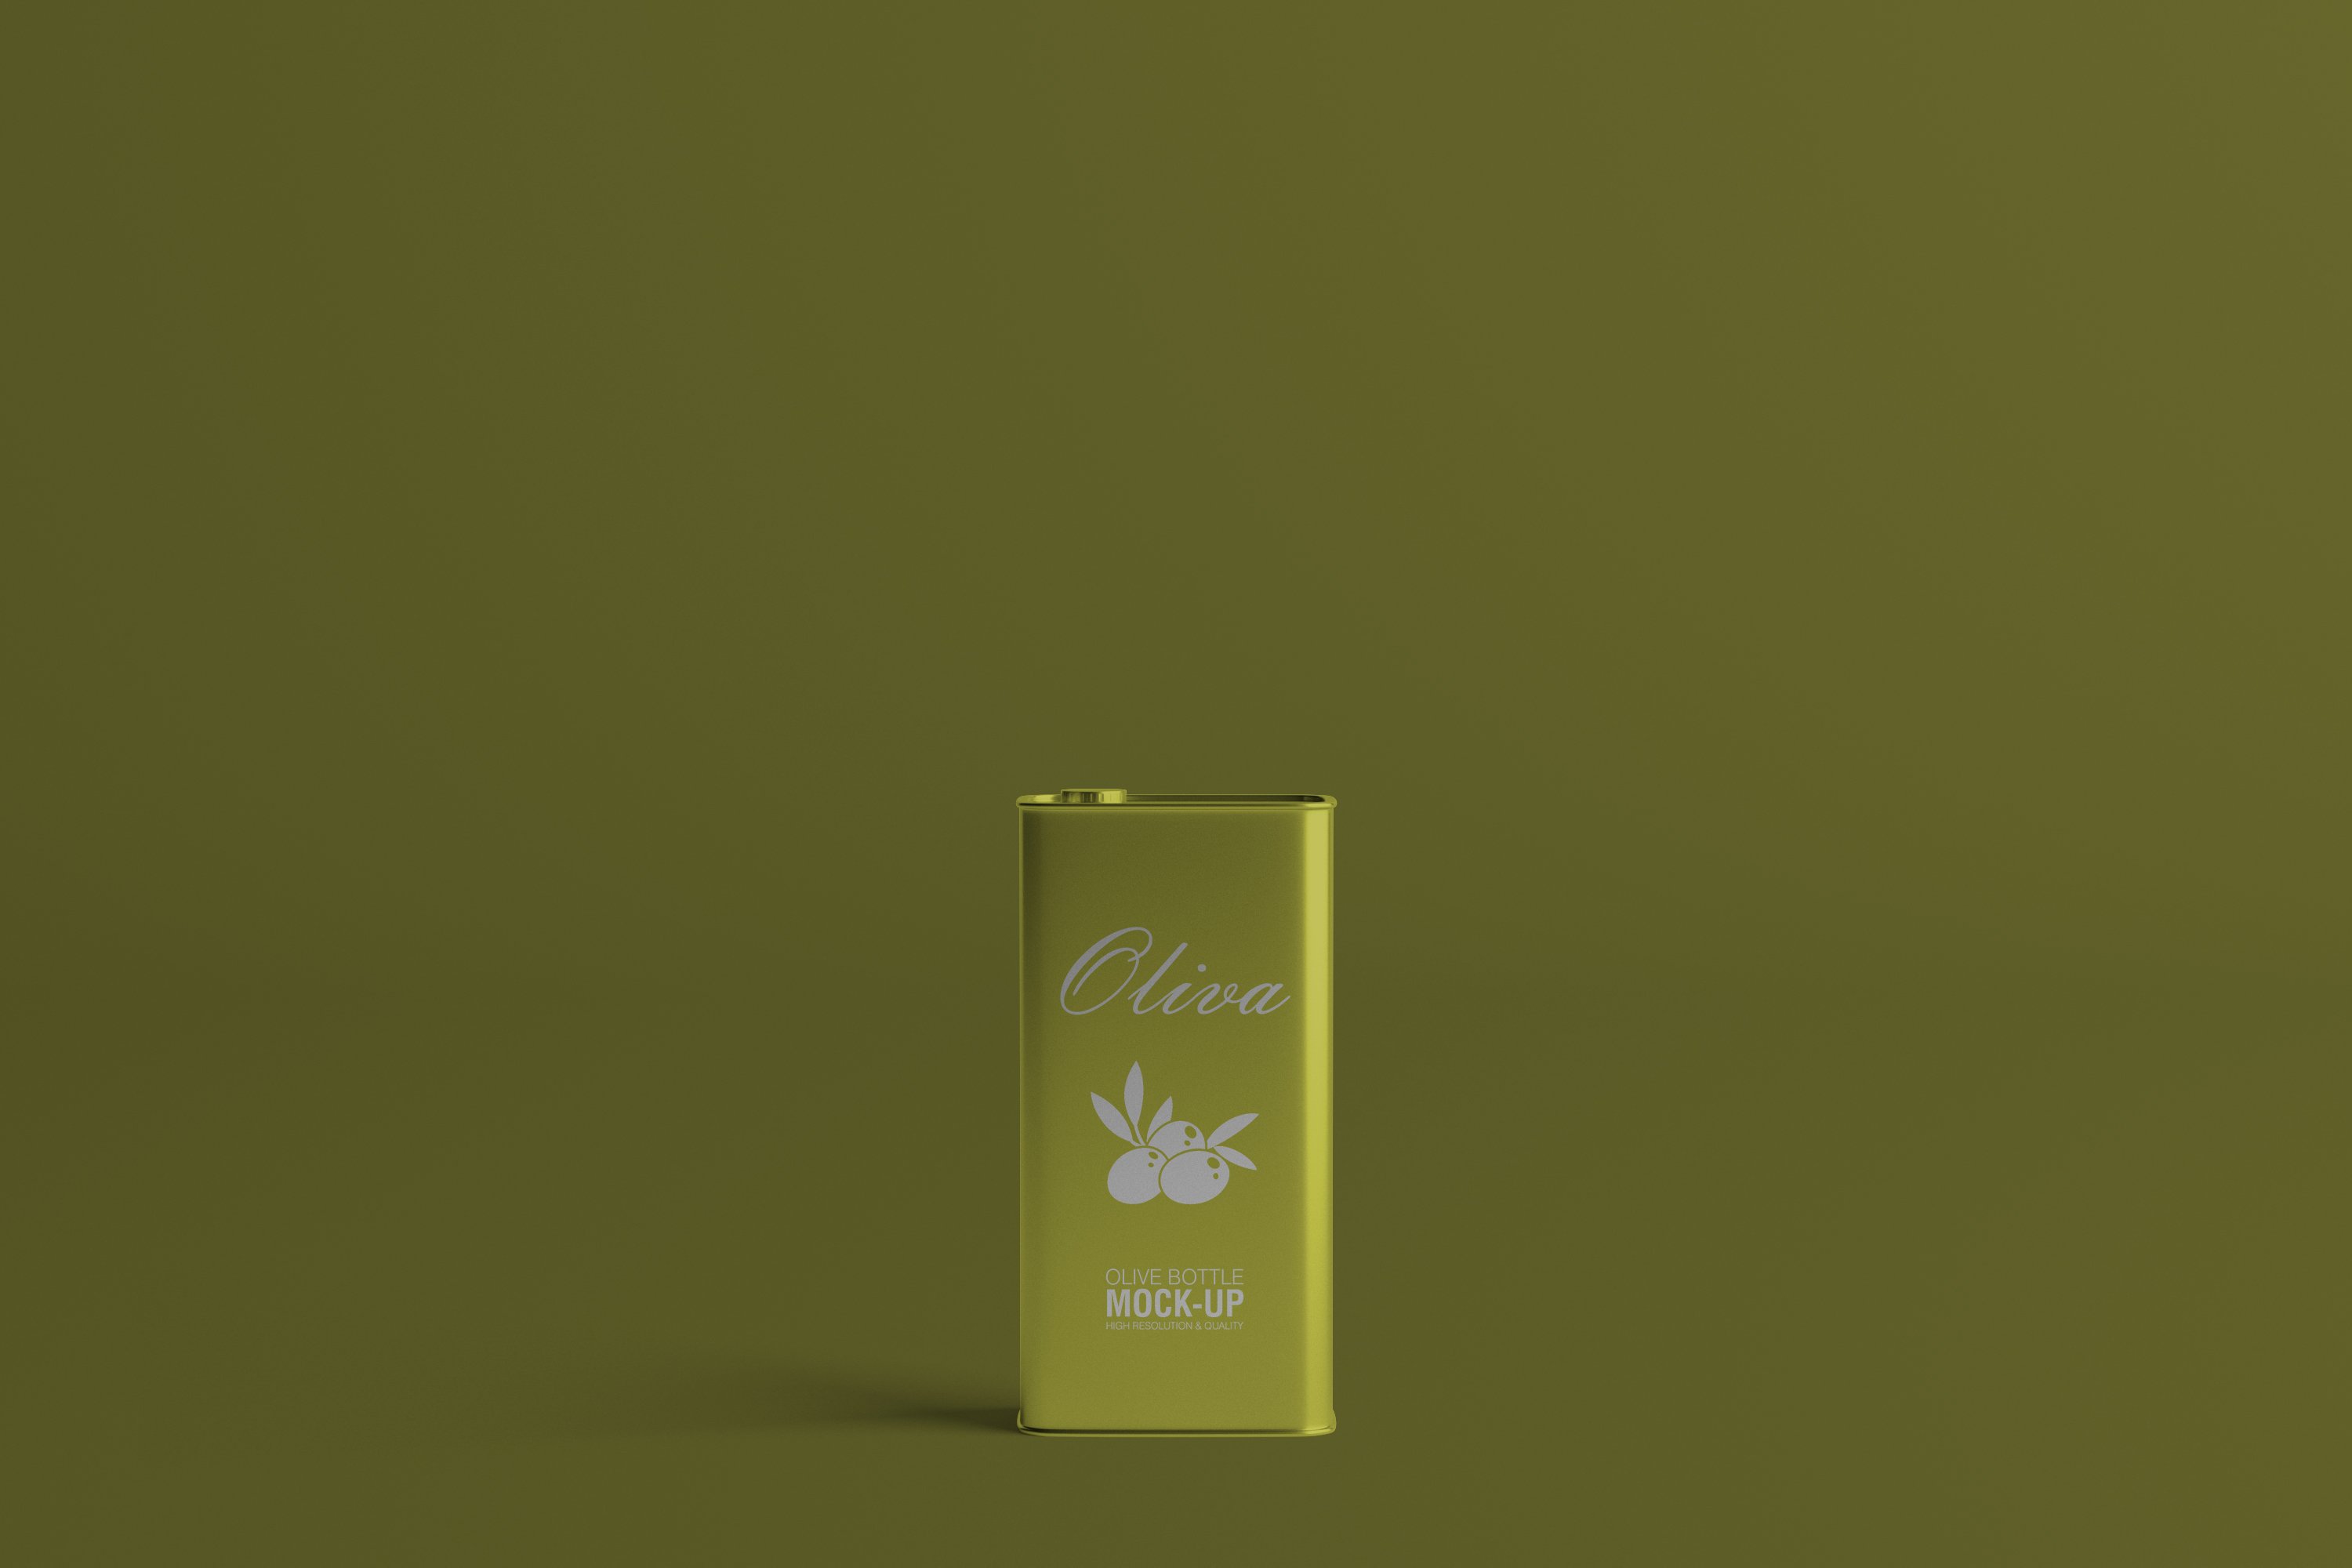 Gradient olive jar with olive logo.